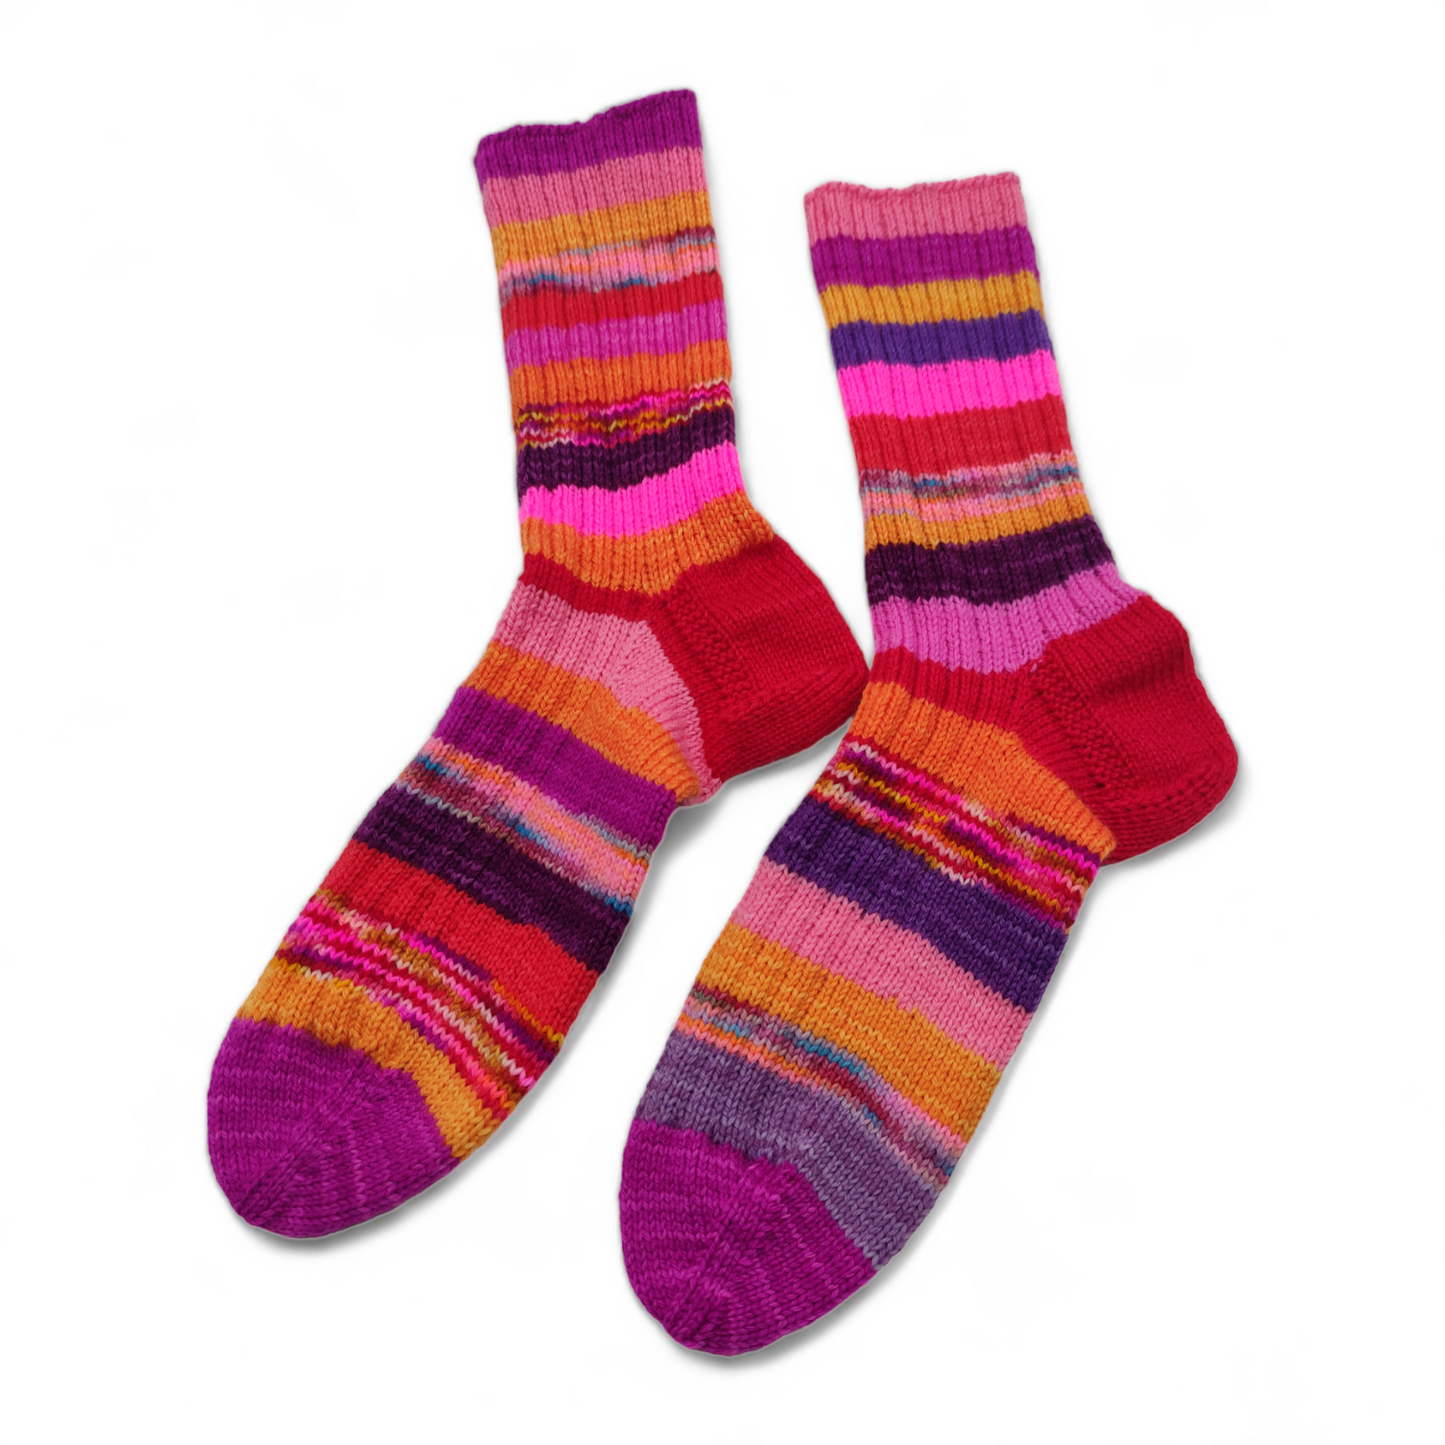 Happy Scrappy Socken, handgestrickt, aus Merino High Twist, Größe 40/41